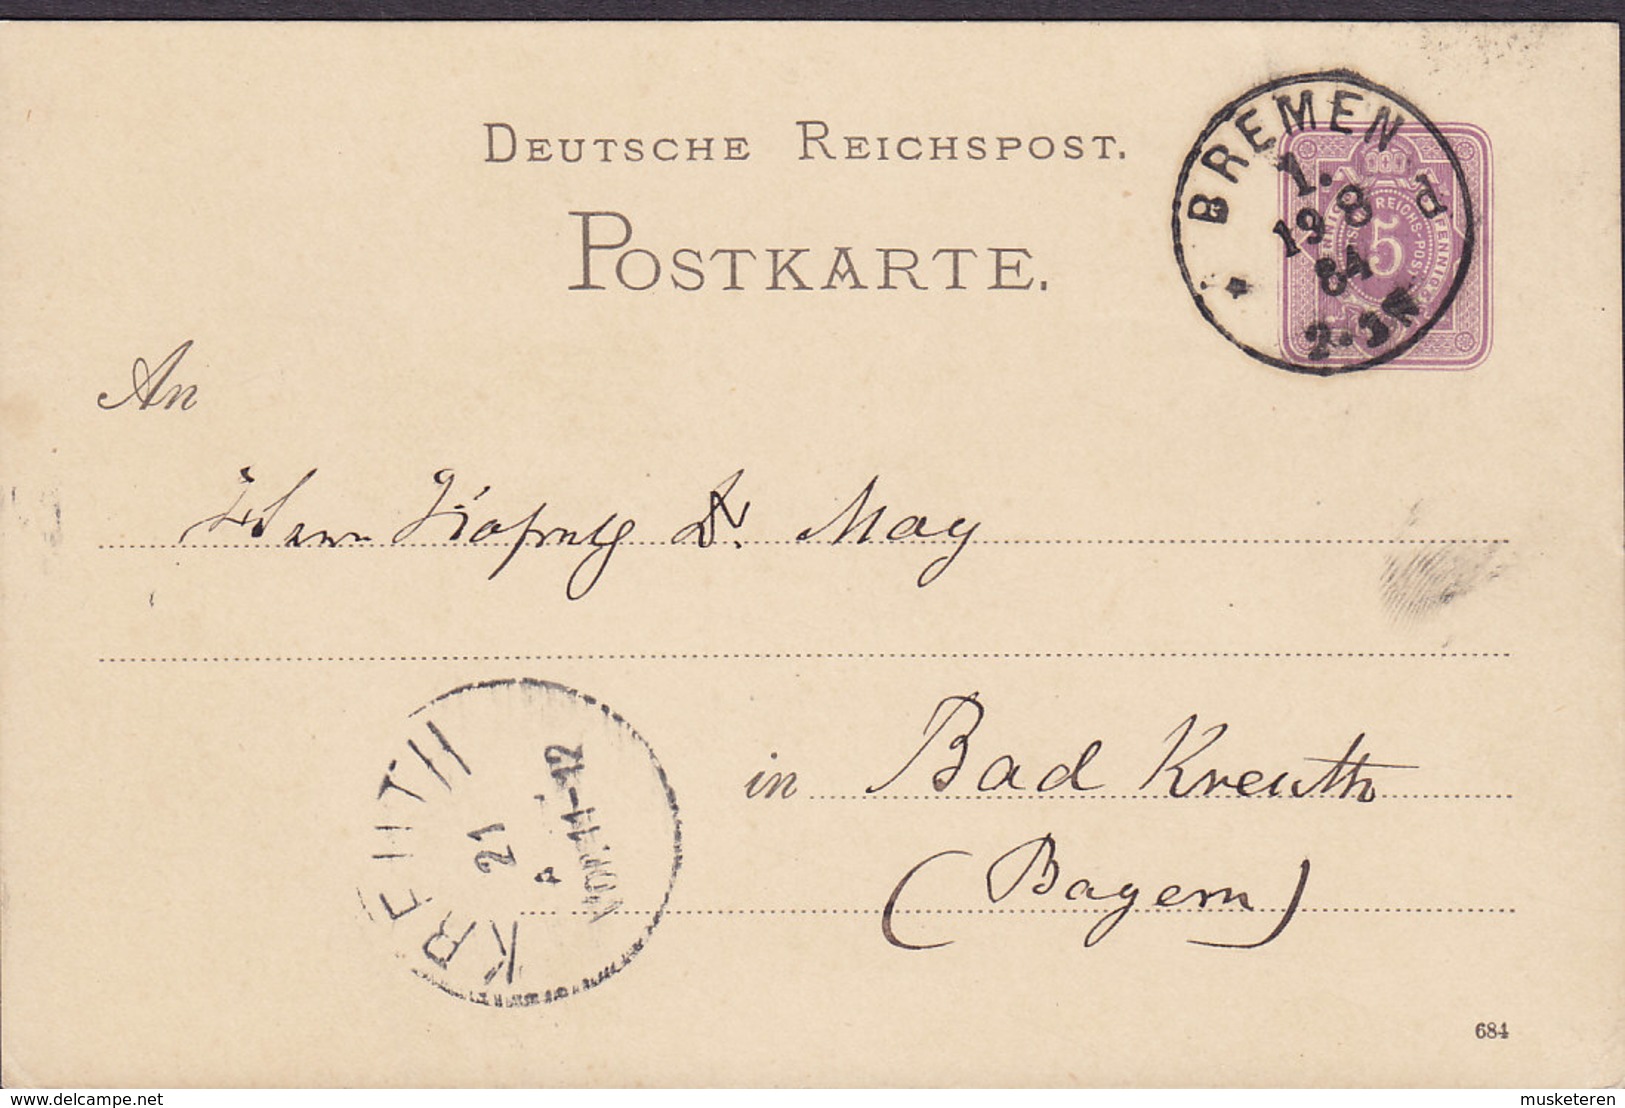 Germany Deutsche Reichspost Postal Stationery Ganzsache 5 Pf. (684) BREMEN 1884 Bad KREUTH Bayern (Arr.) (2 Scans) - Postkarten